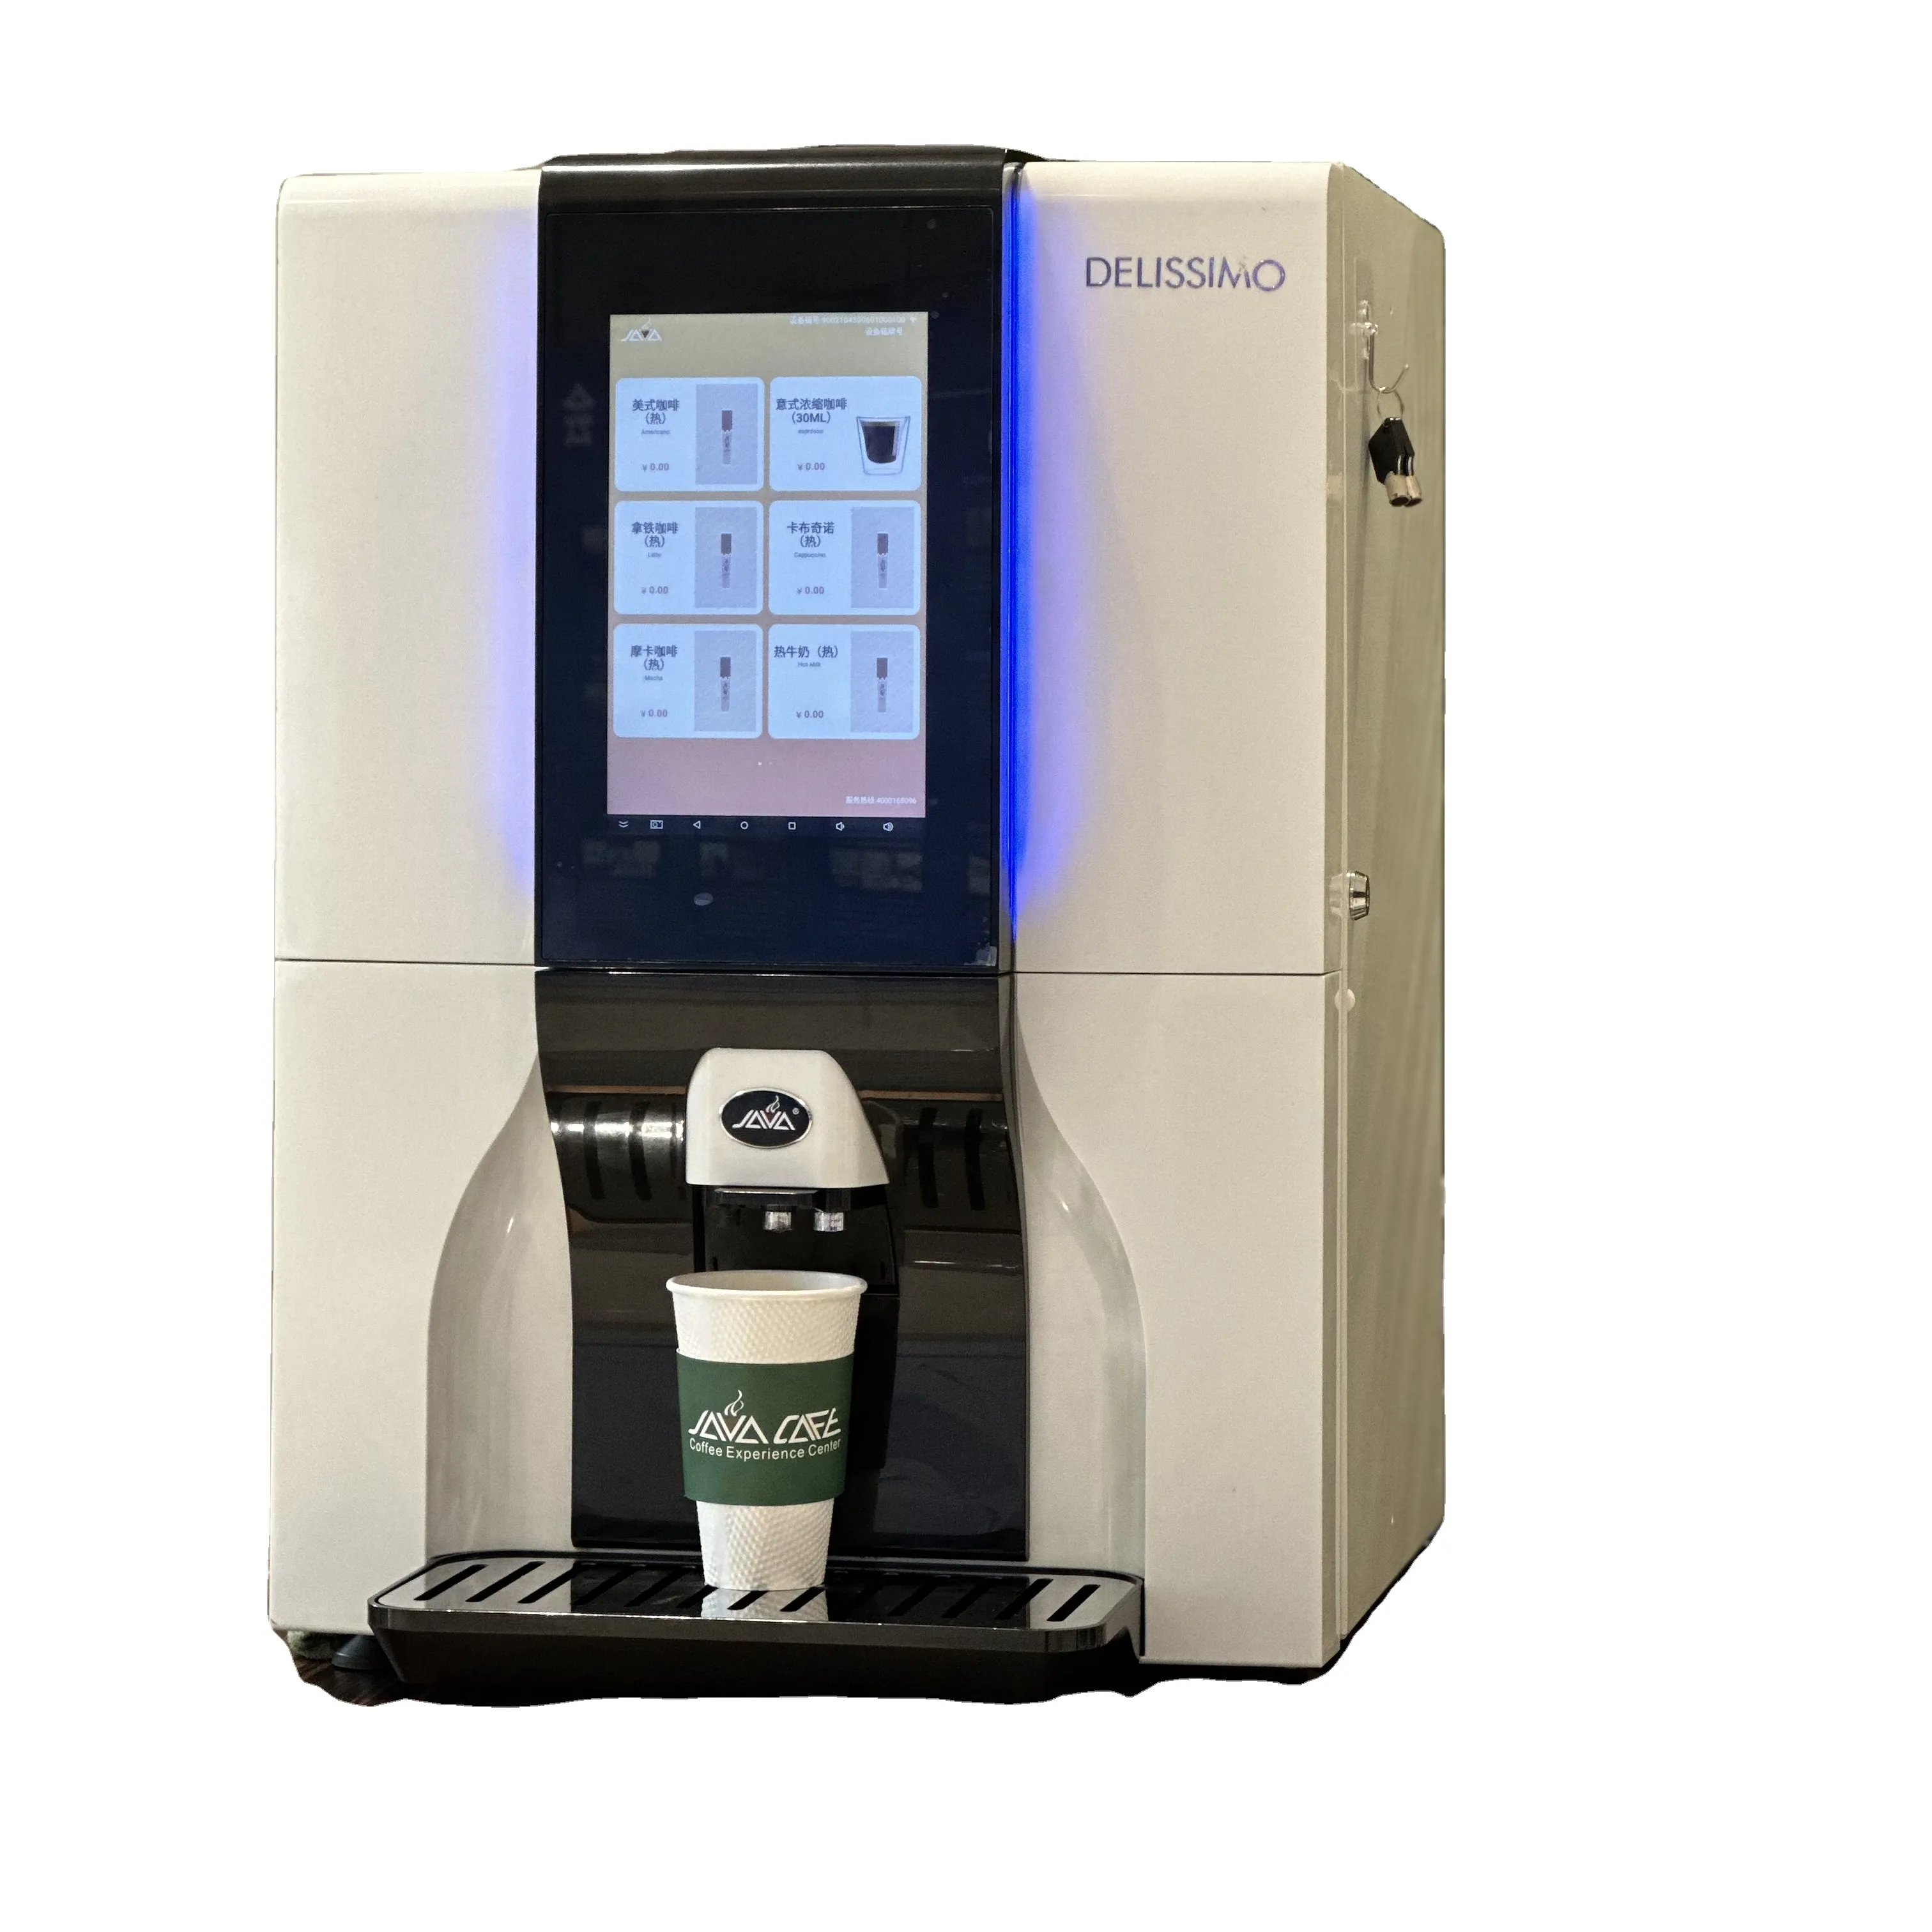 一般的なタイプの豆からカップまでのコーヒー自動販売機コーヒー自動販売機超自動コーヒーマシン